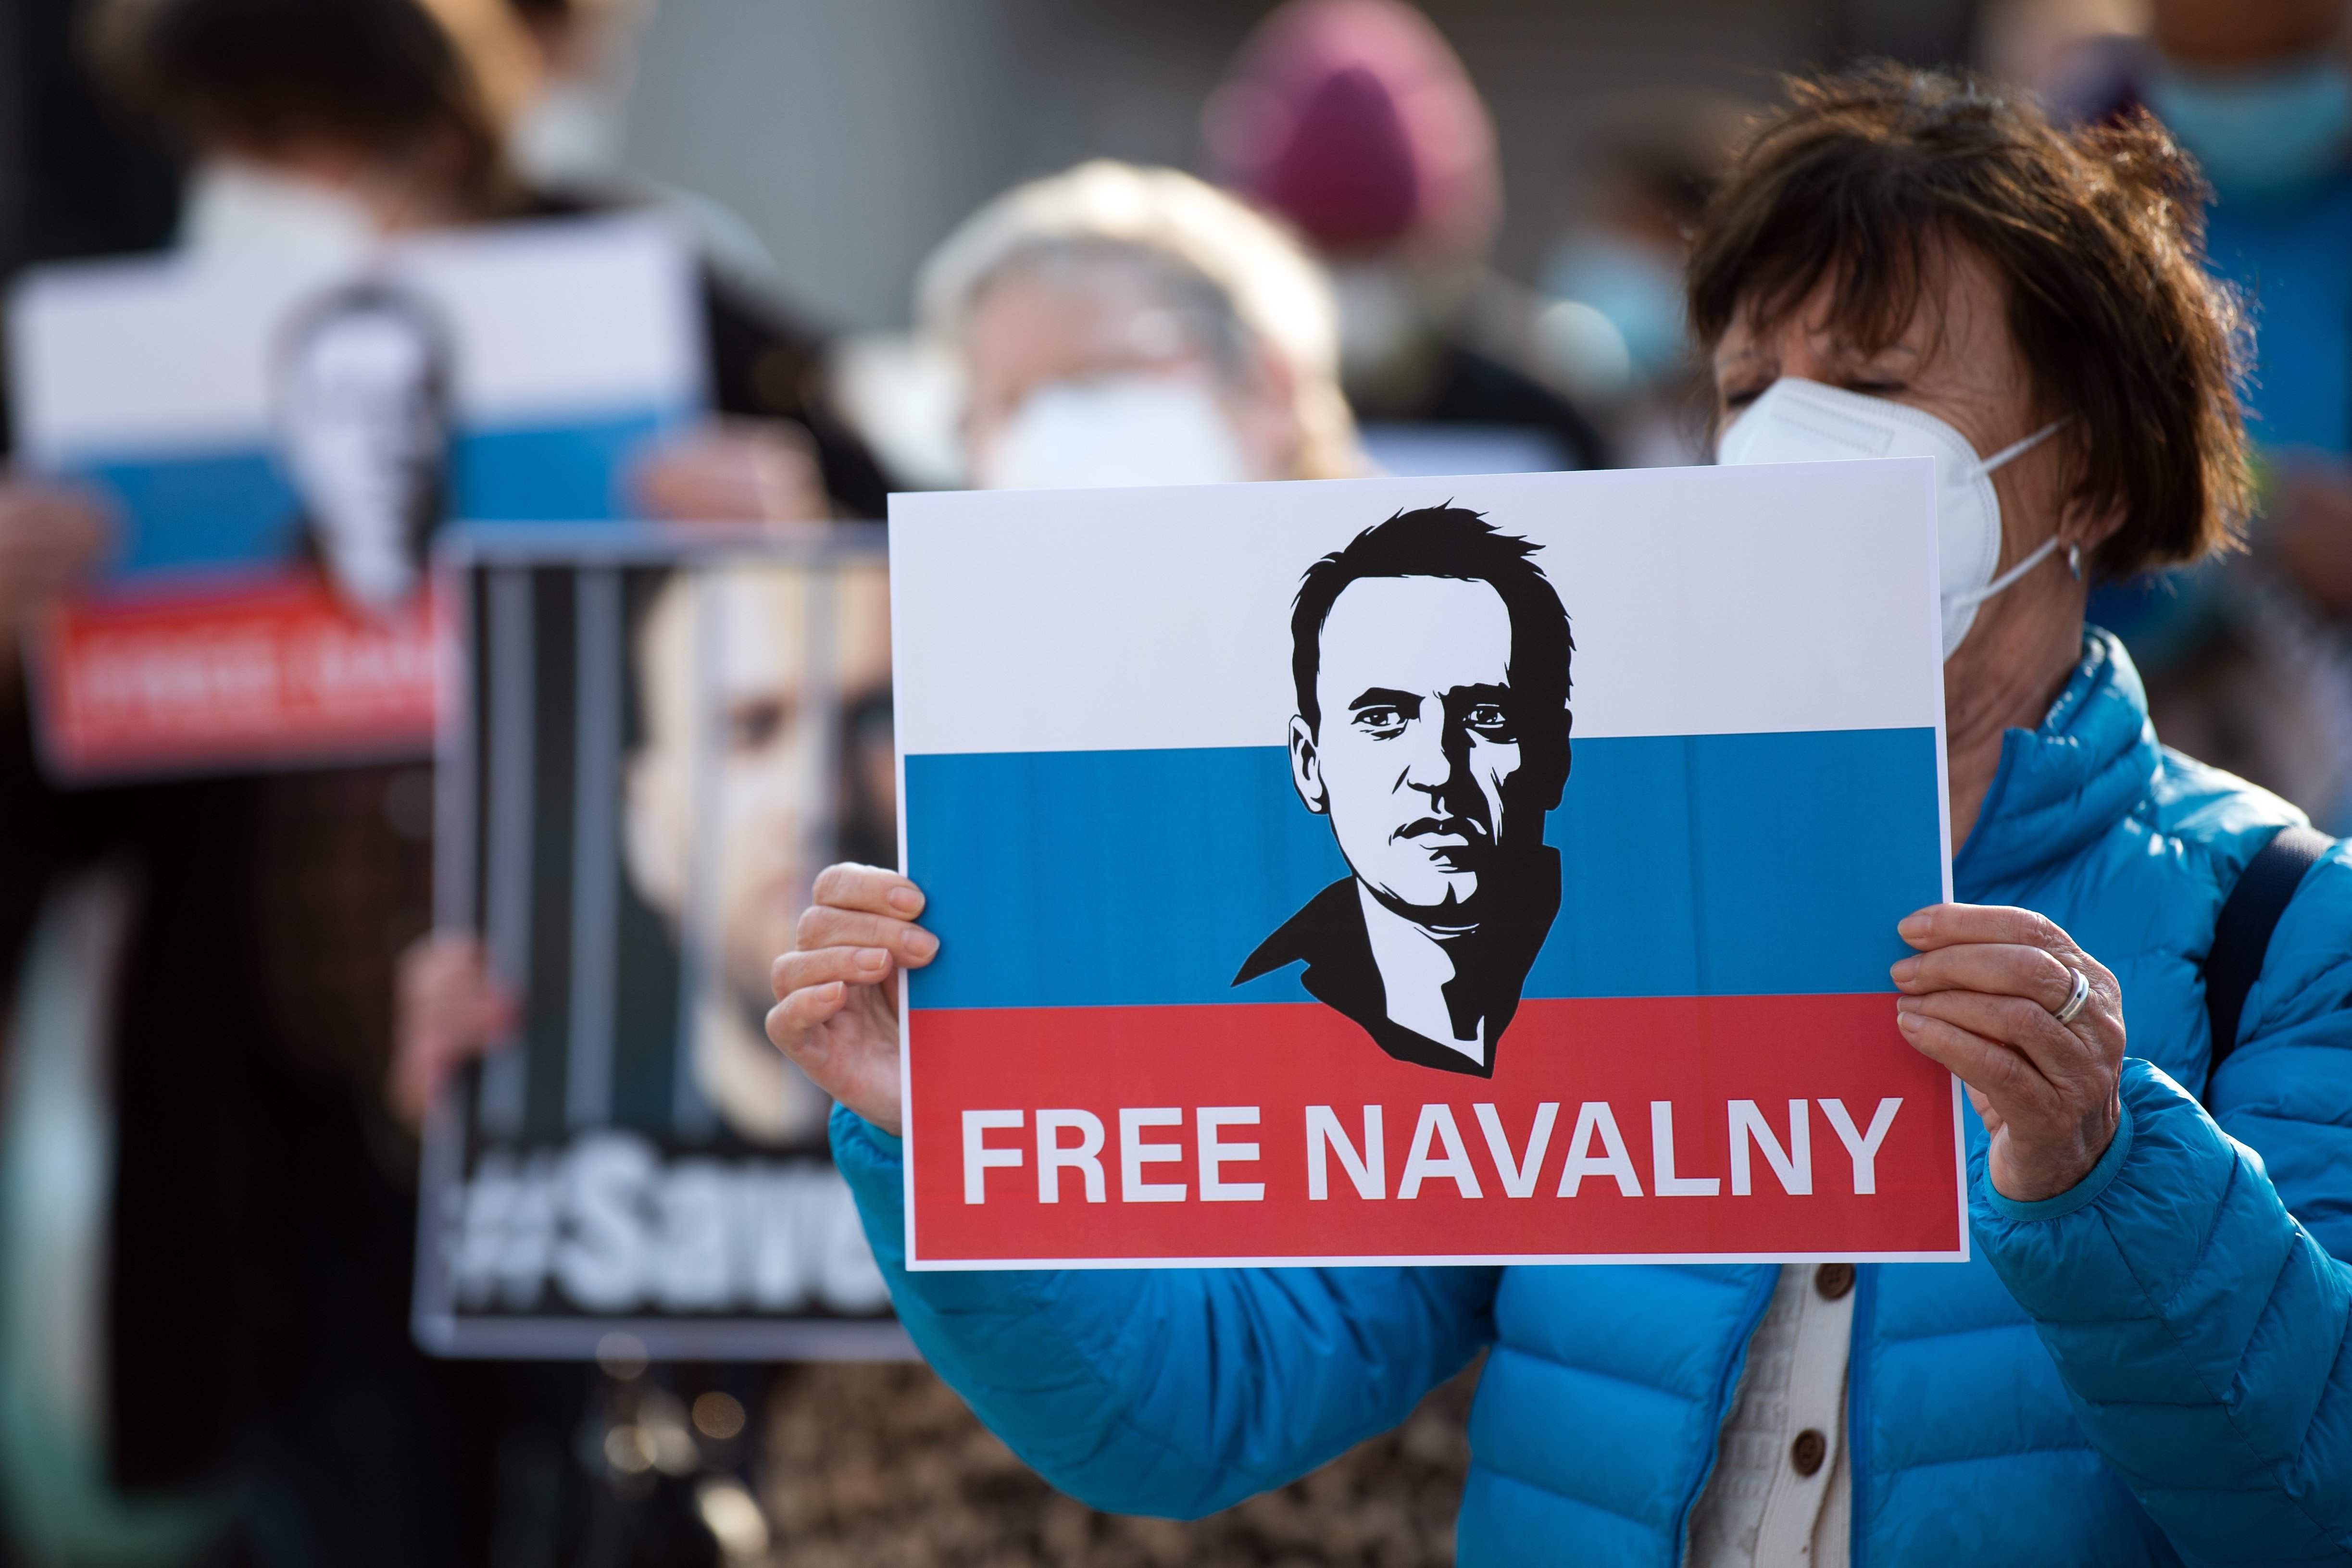 On és Aleksei Navalni? El Kremlin assegura que no sap on es troba el líder opositor rus